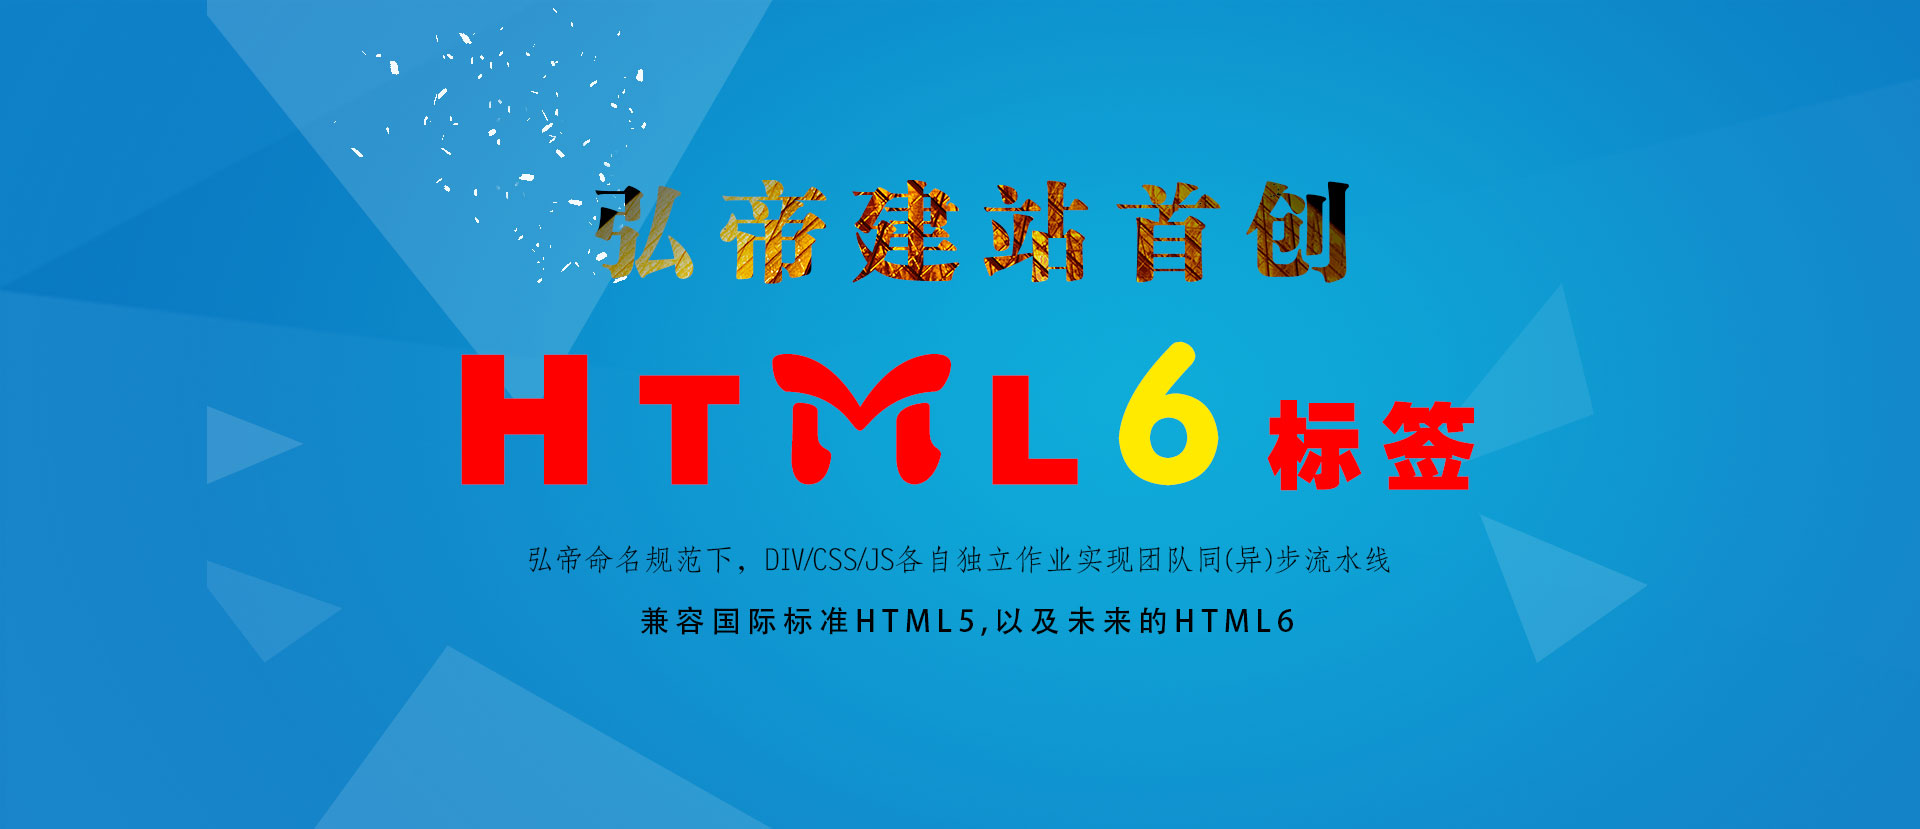 弘帝HTML6